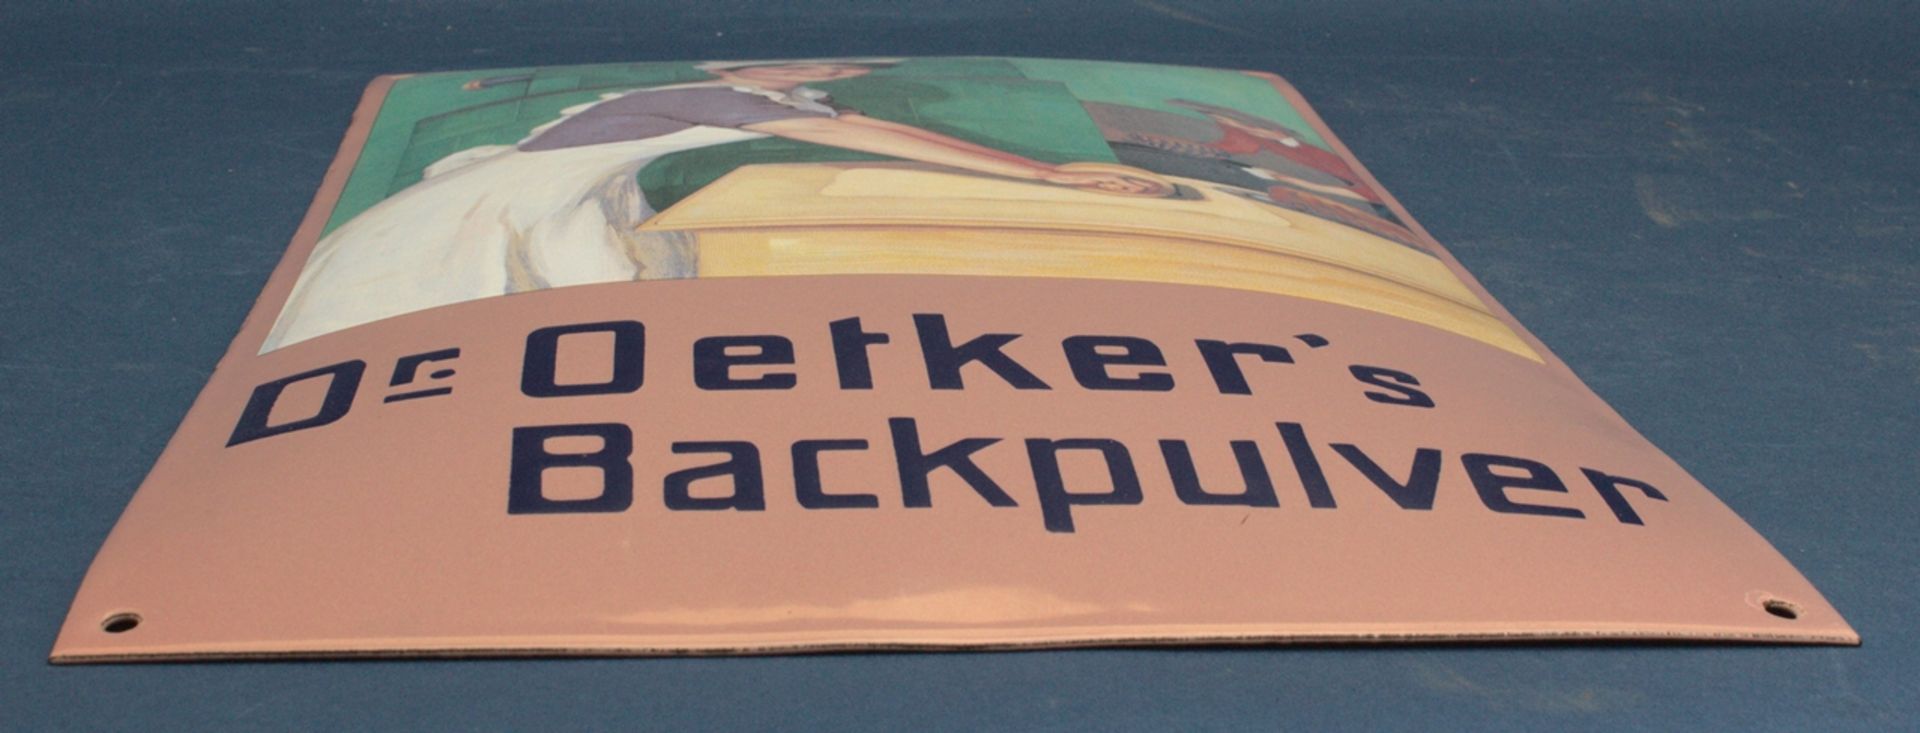 "DR. OETKER'S BACKPULVER". Dekoratives, leicht gewölbtes Emailleschild, ca. 50 x 30 cm, schöner - Bild 5 aus 6